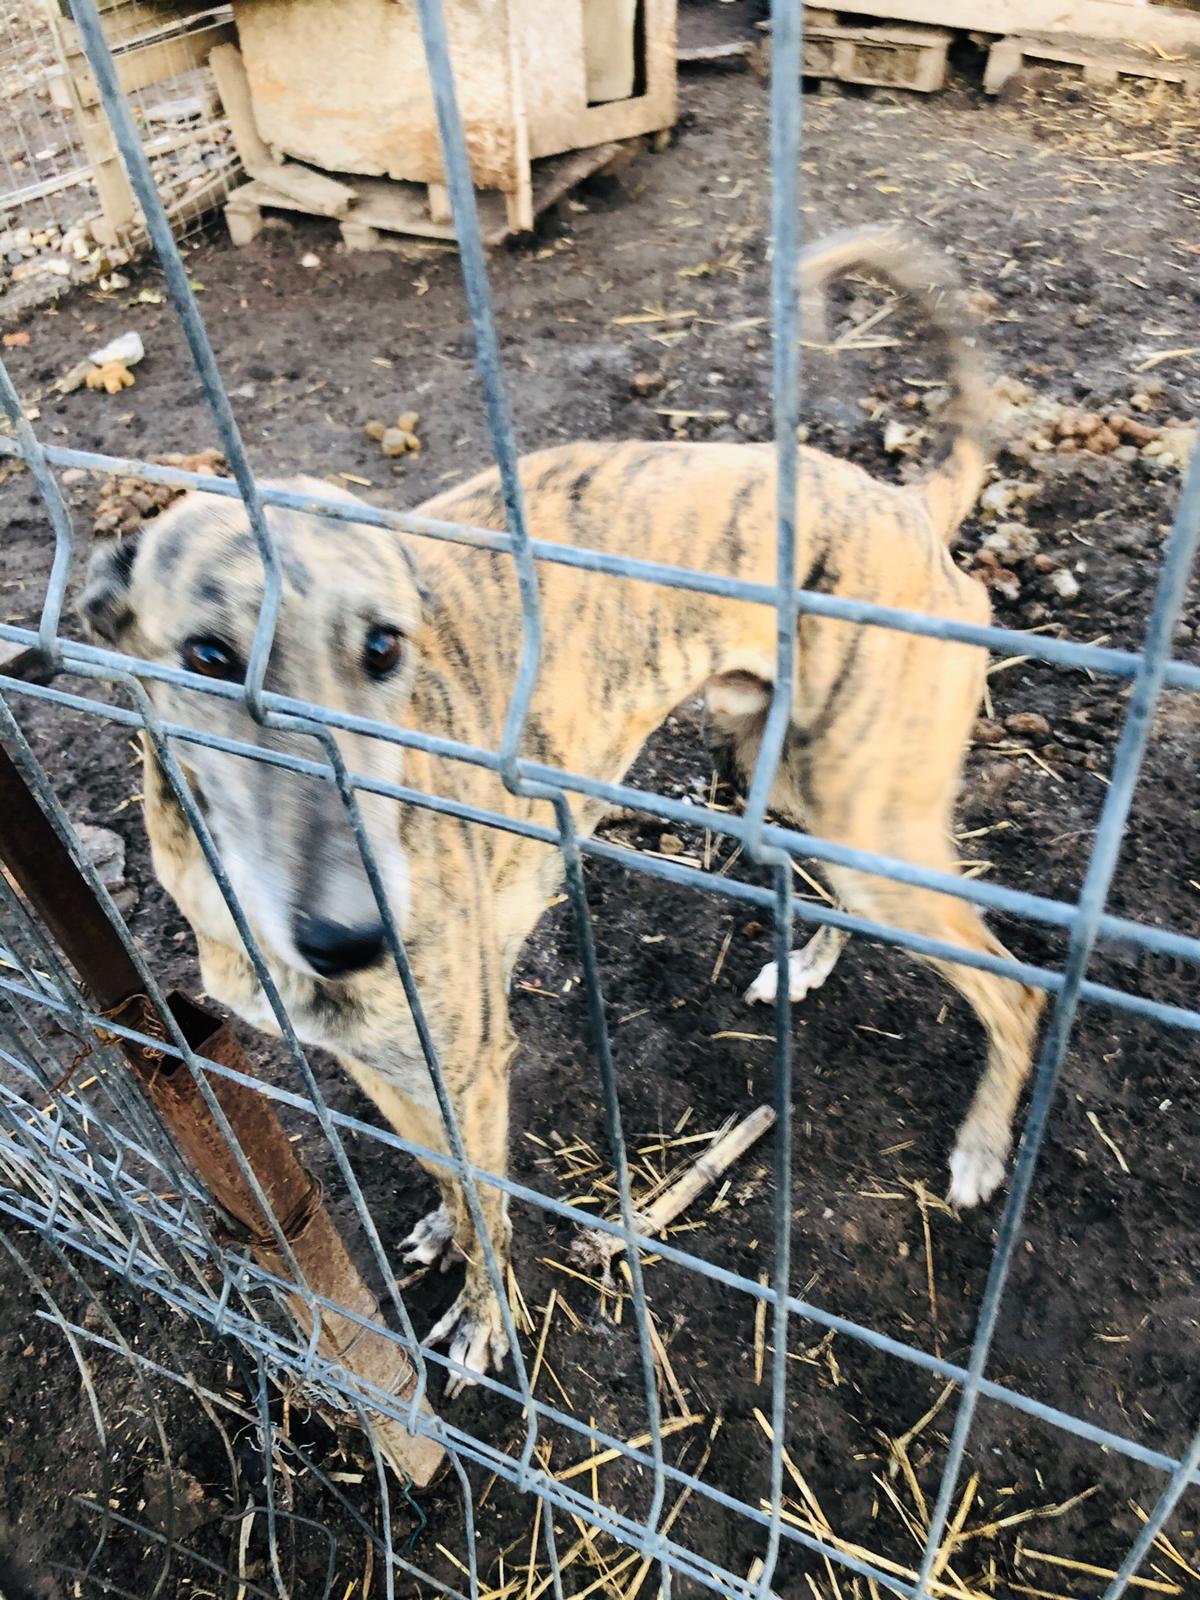 Poliția Animalelor, în acțiune: aproape 150 de câini flămânzi, bolnavi și schingiuți, salvați dintr-un așa-zis adăpost din județul Giurgiu